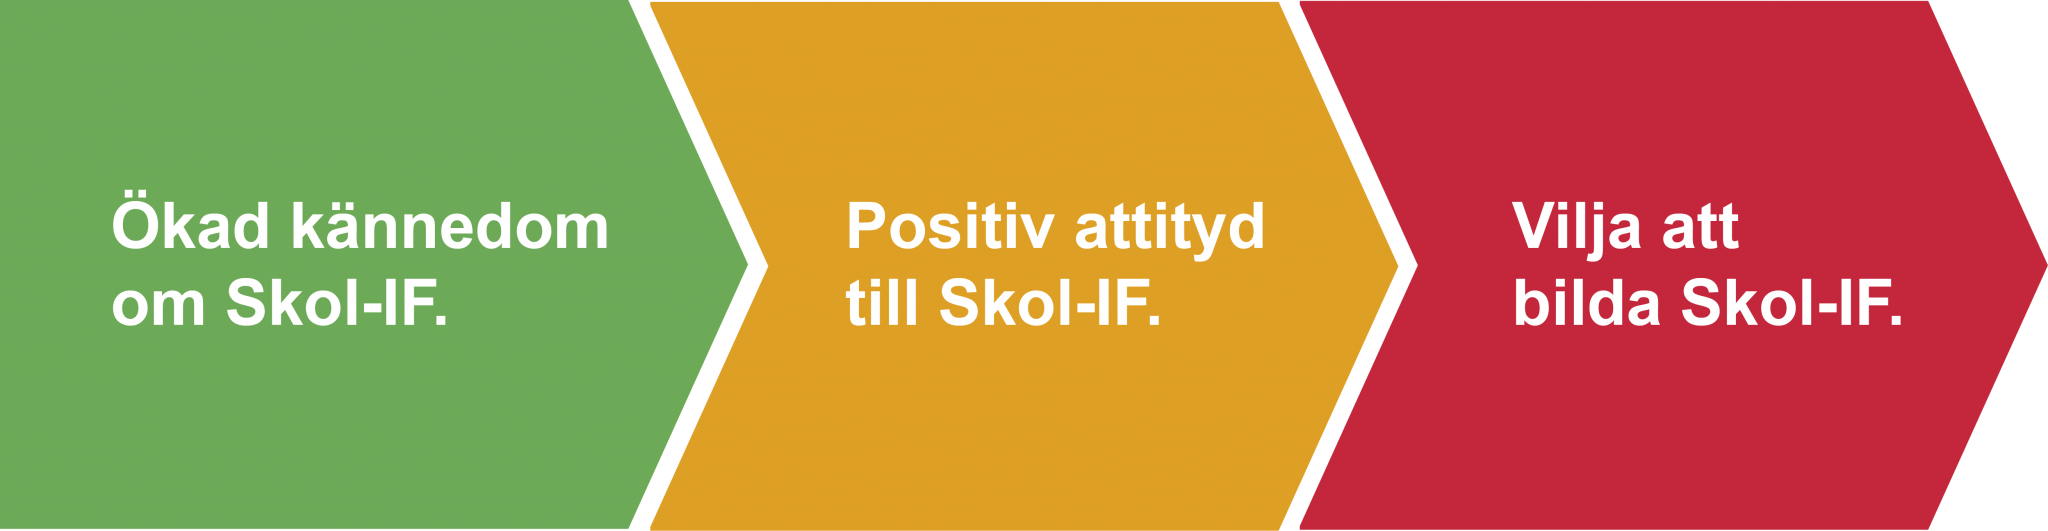 Ökad kännedom om Skol-IF, Positiv attityd till Skol-IF, Vilja att bilda Skol-IF.